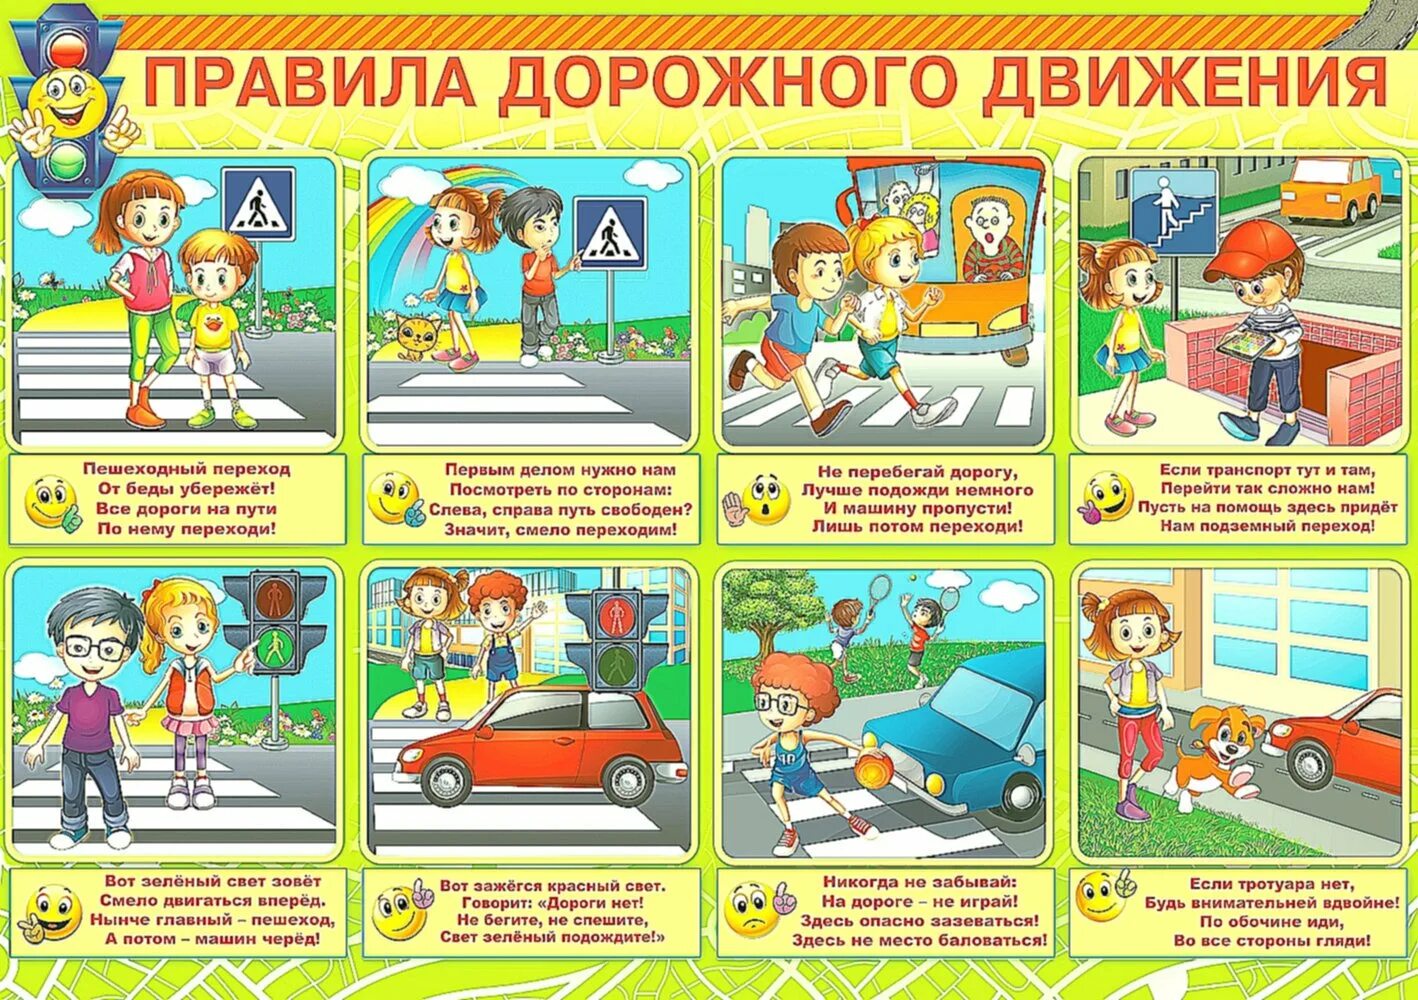 10 вопросов по безопасности. Правила дорожного движения для детей. Безопасность на дороге. Правила дорожногодвижения для етй. Безопасность на дороге для детей.